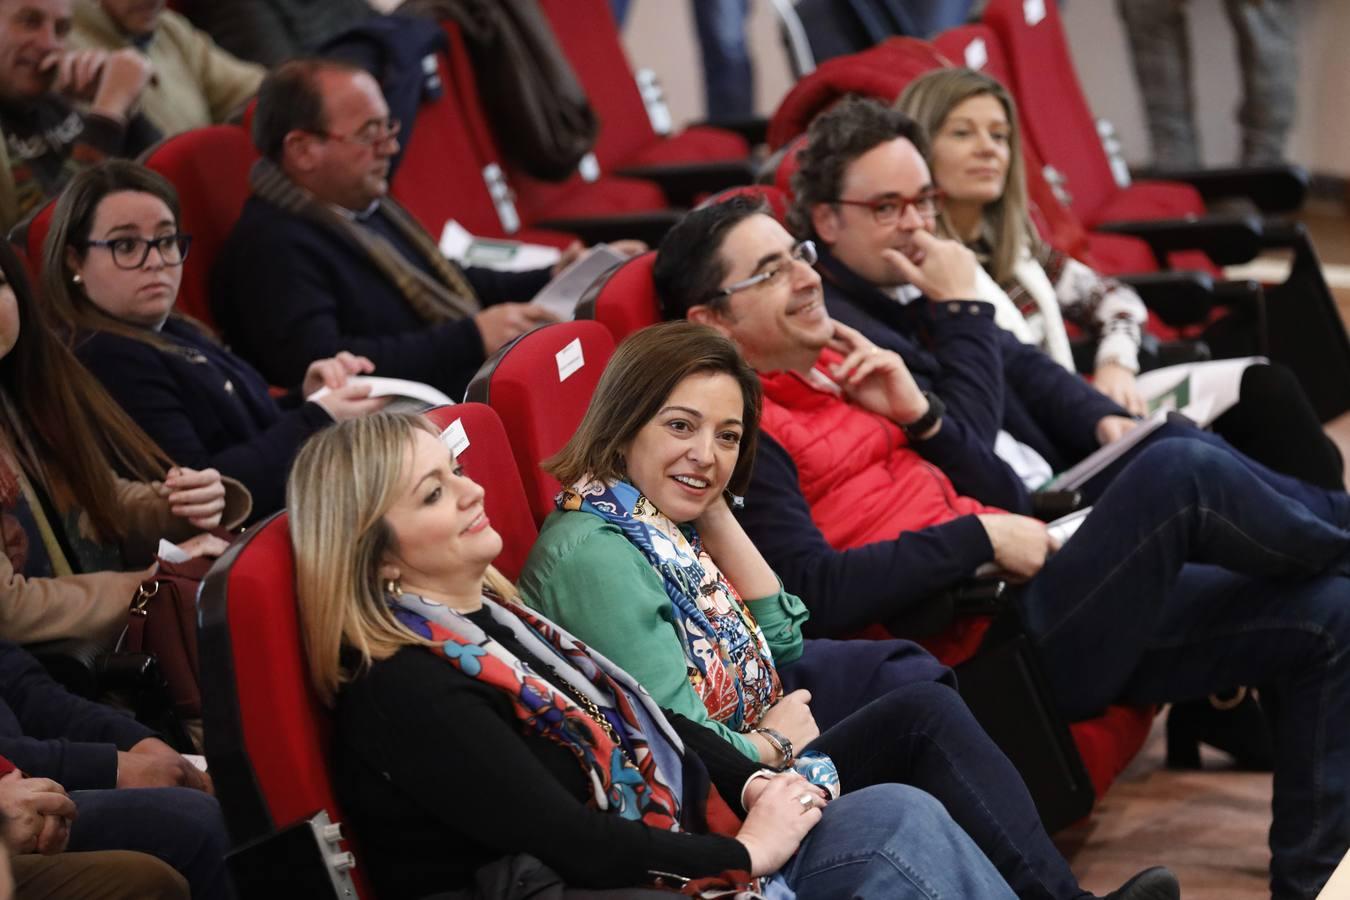 El Comité Provincial del PSOE en Córdoba, en imágenes